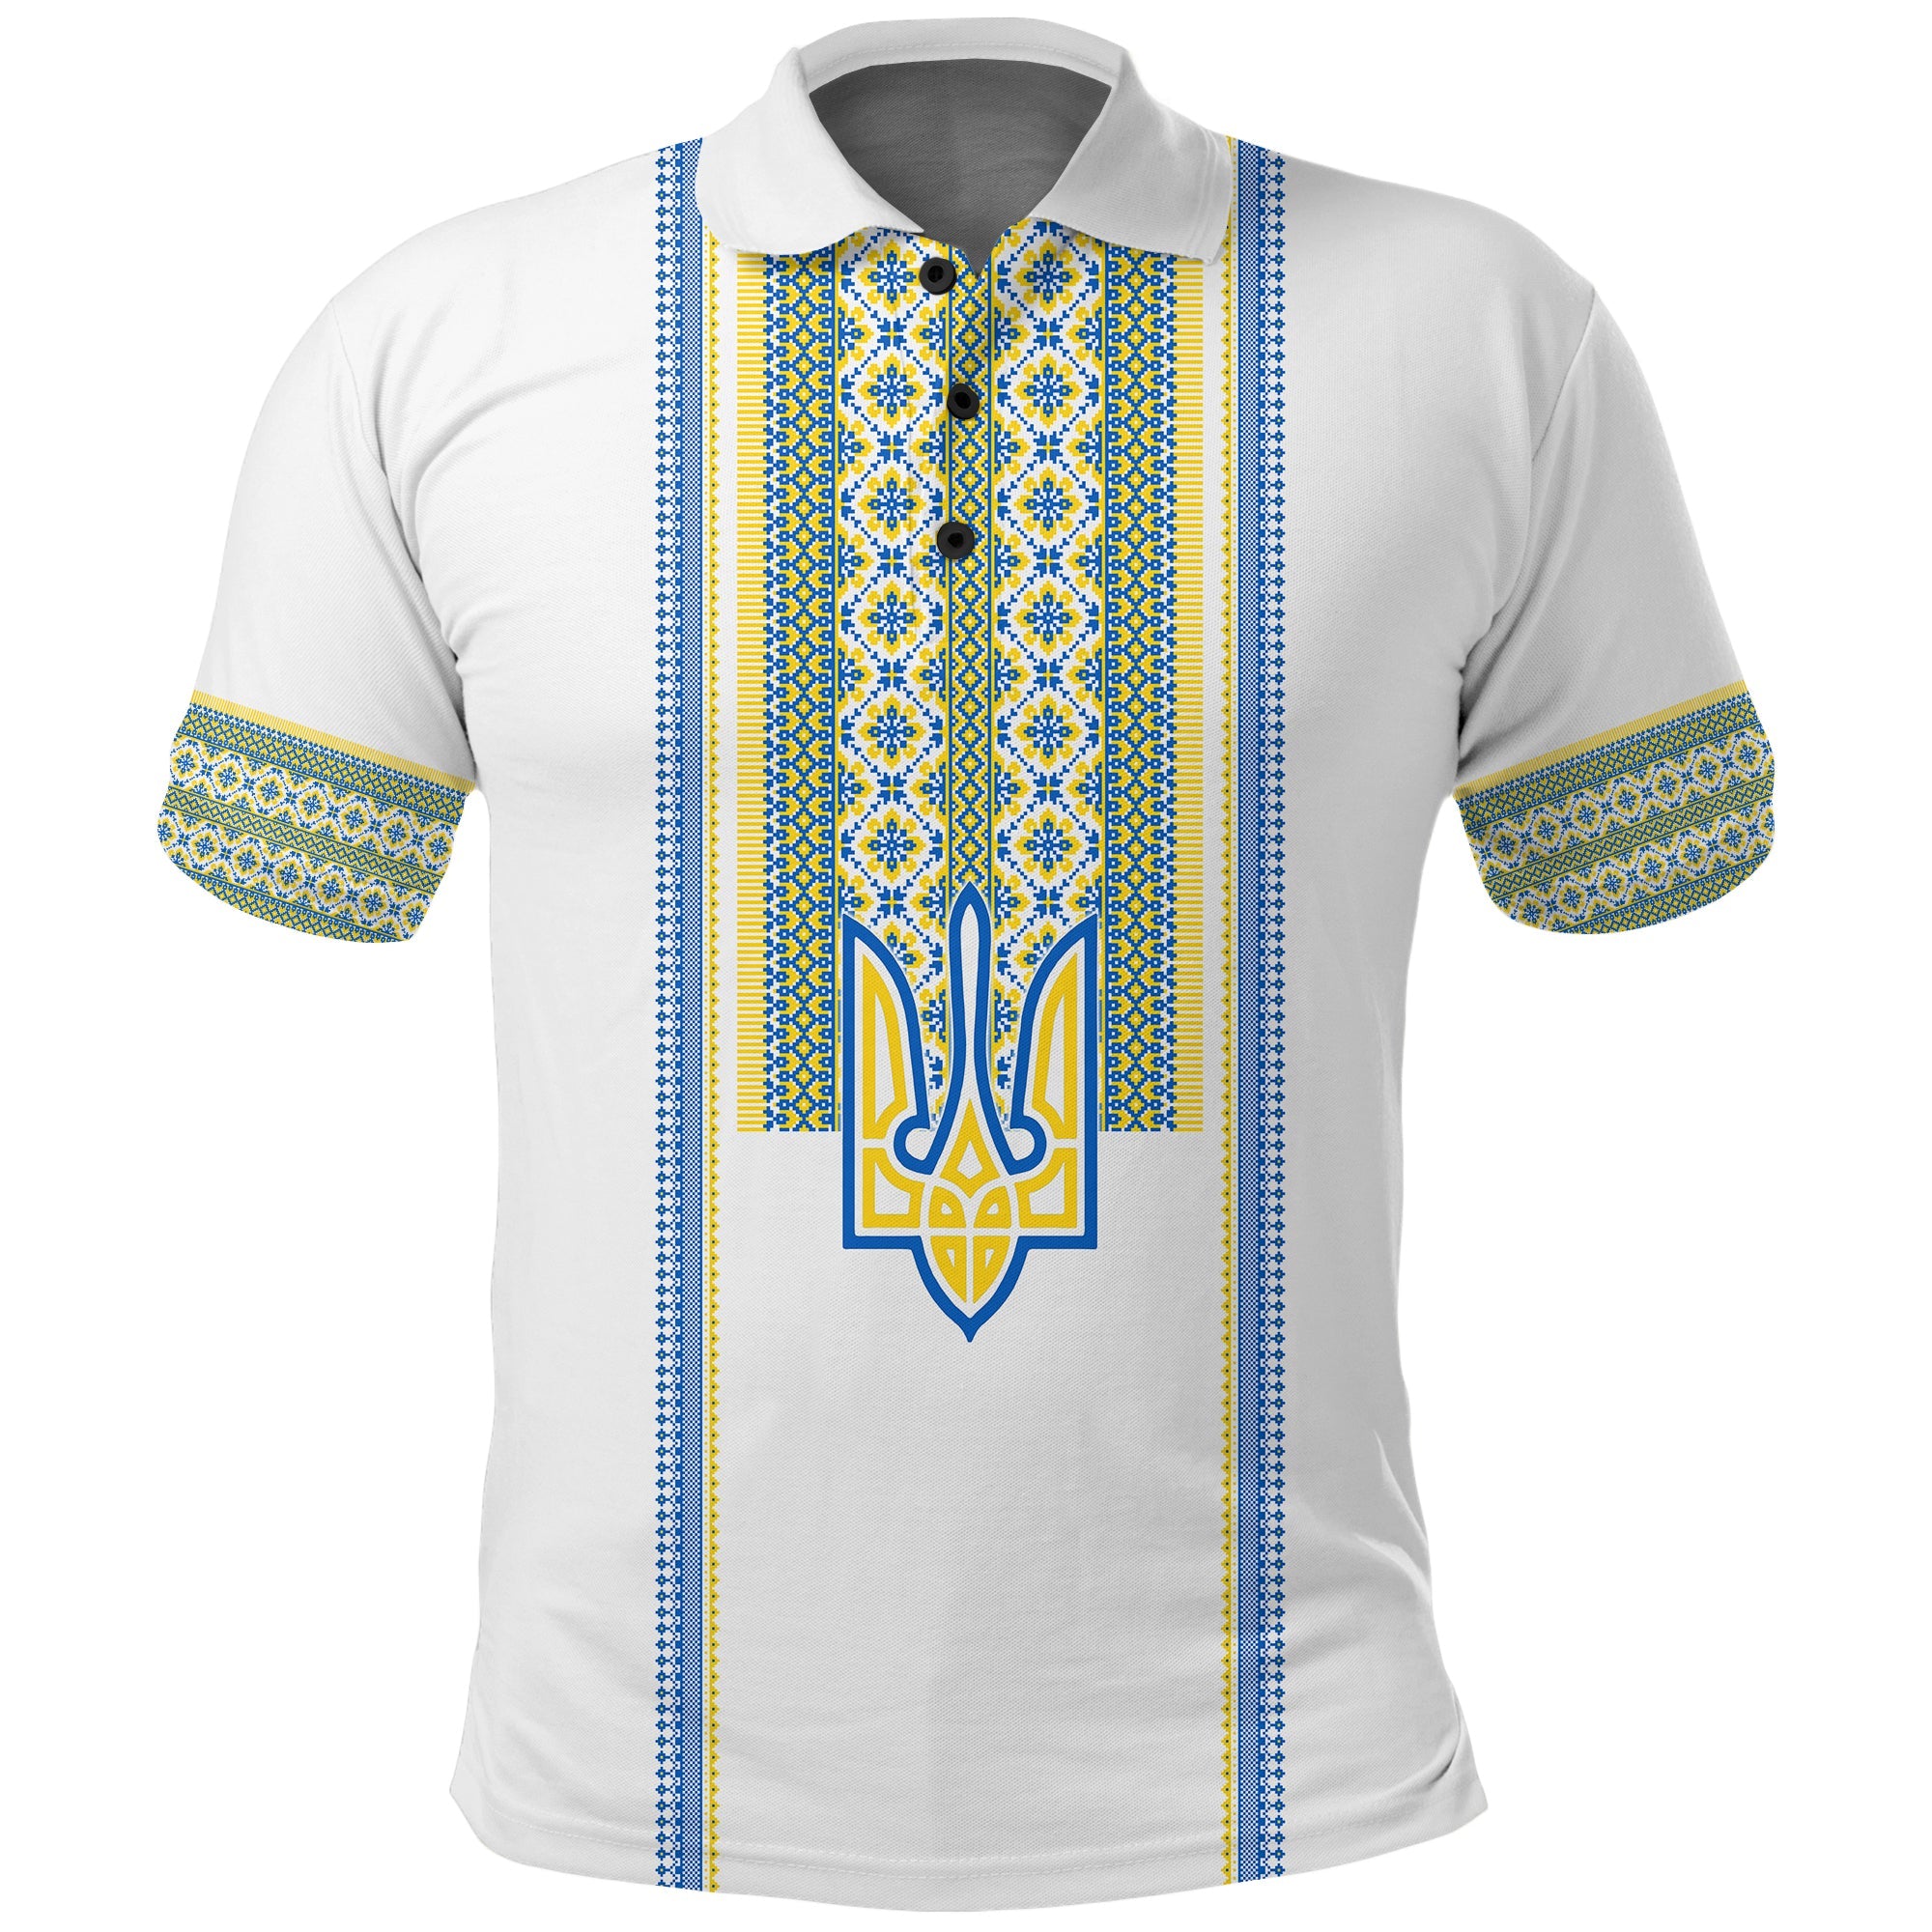 ukraine-vyshyvanka-polo-shirt-unity-day-white